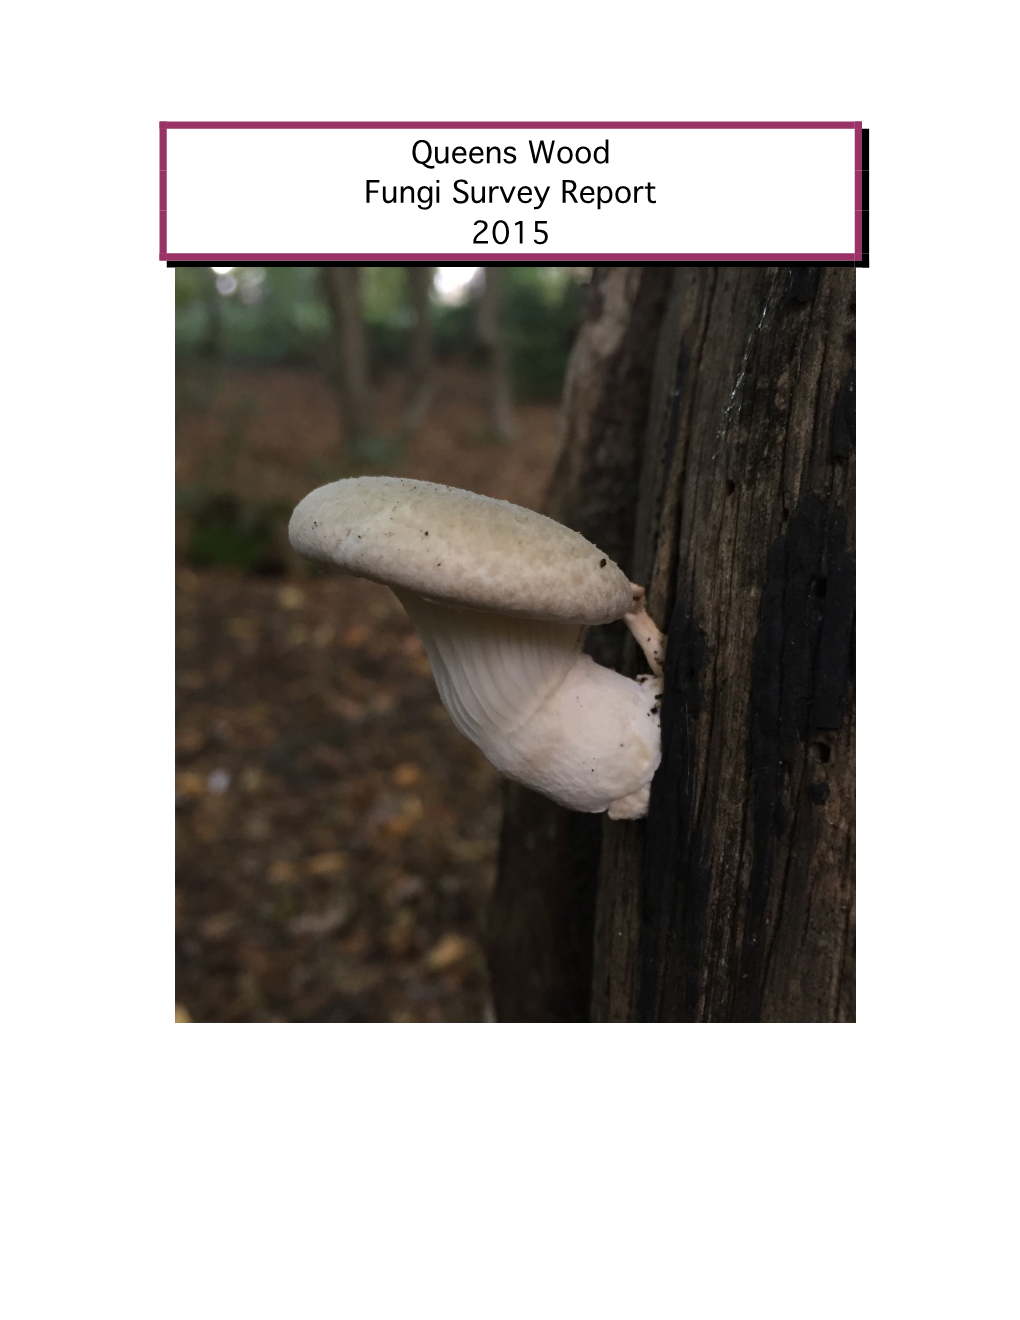 Queens Wood Fungi Survey Report 2015